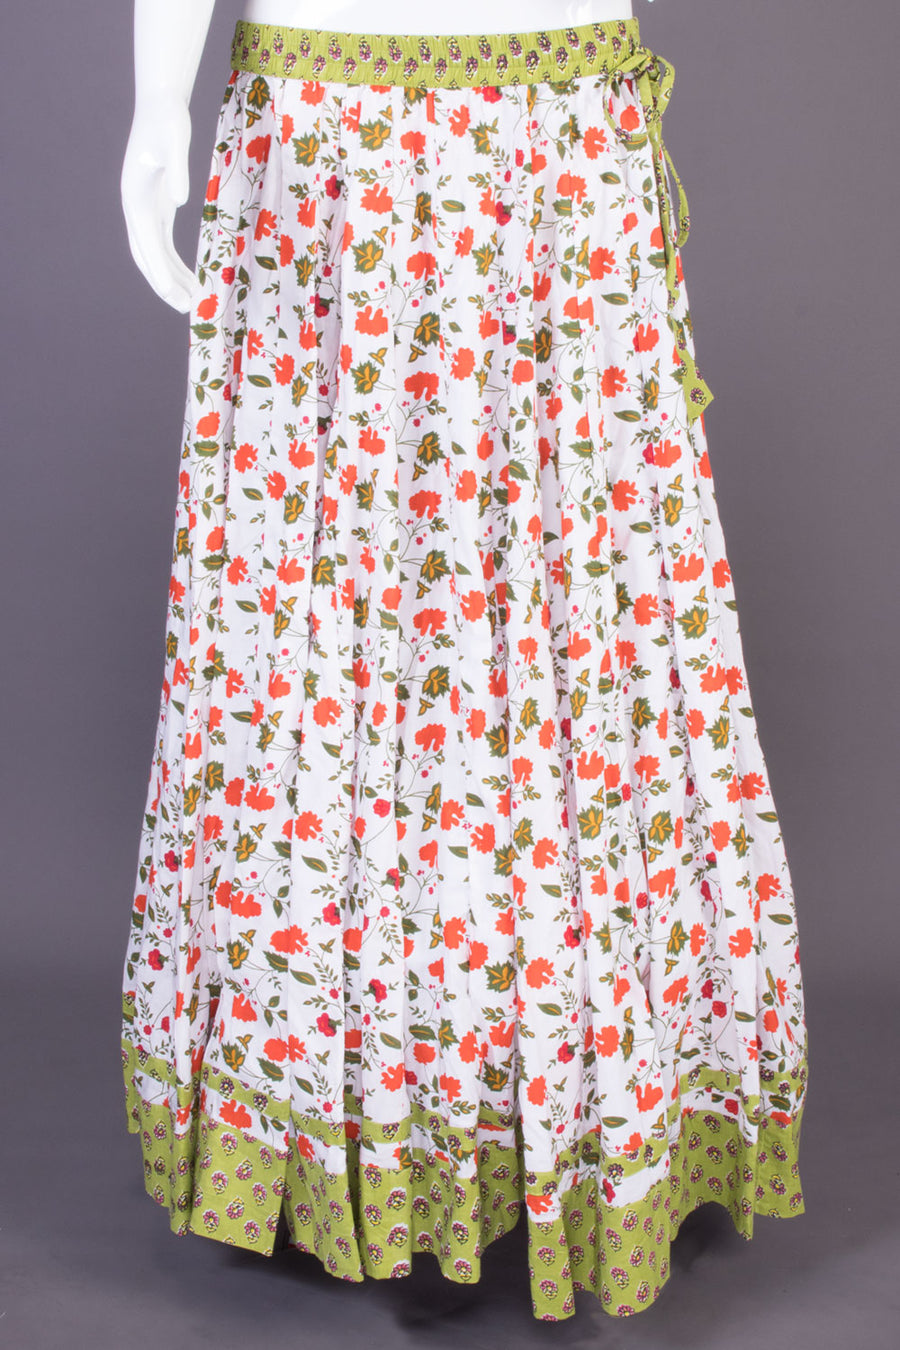 White Hand Block Printed Cotton Skirt (Size-36 to 40)-Avishya